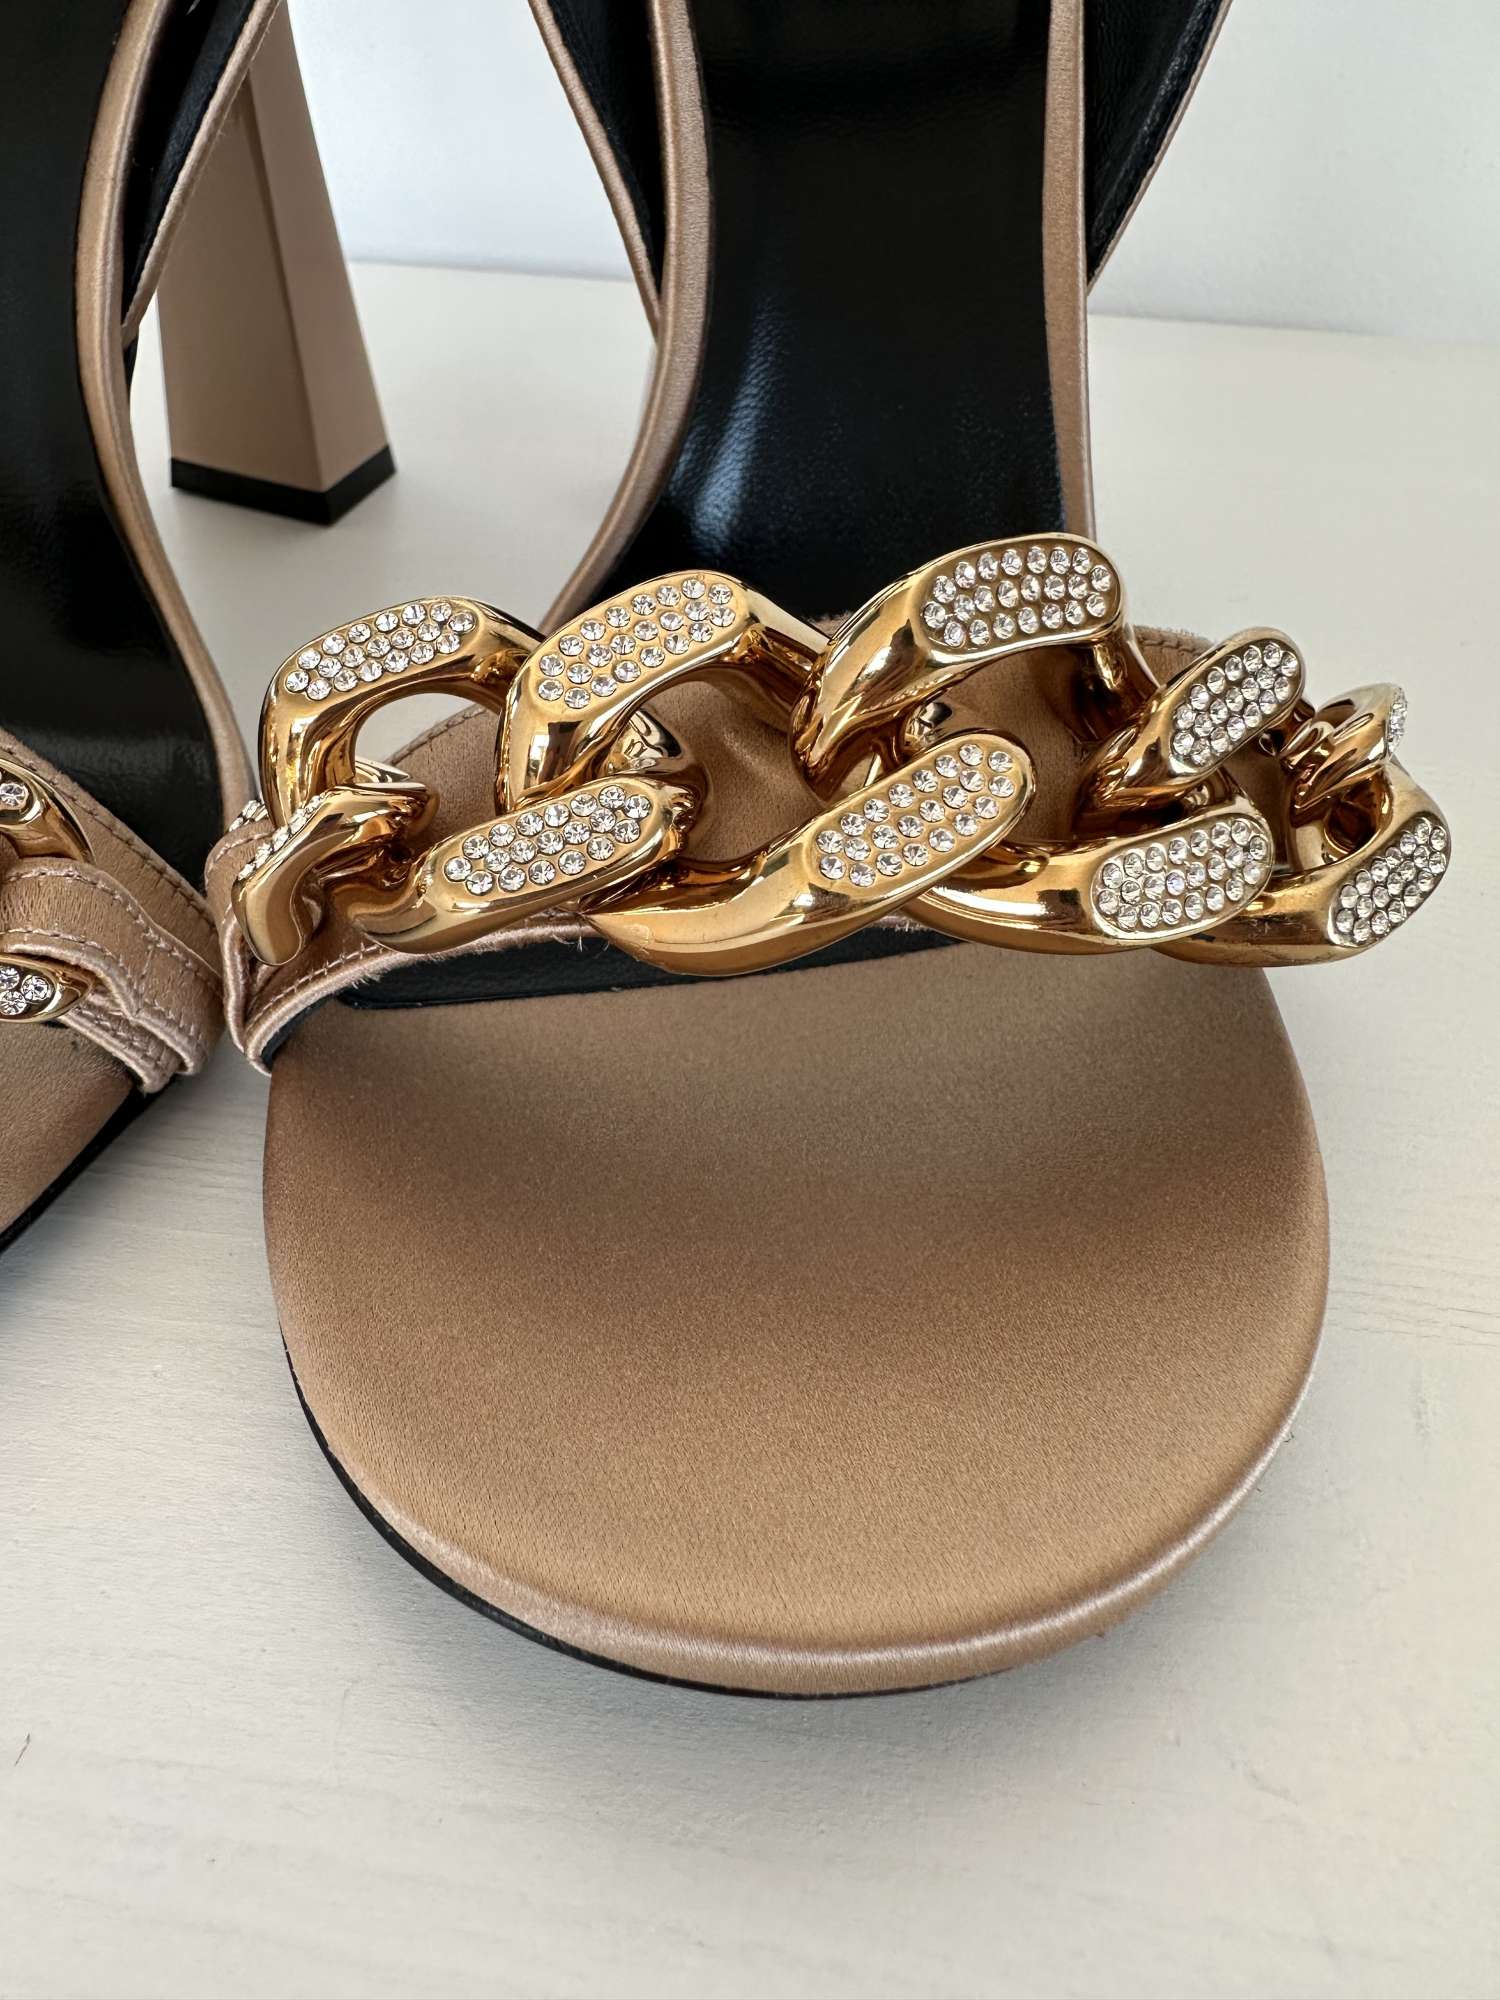 Versace hnede sandale